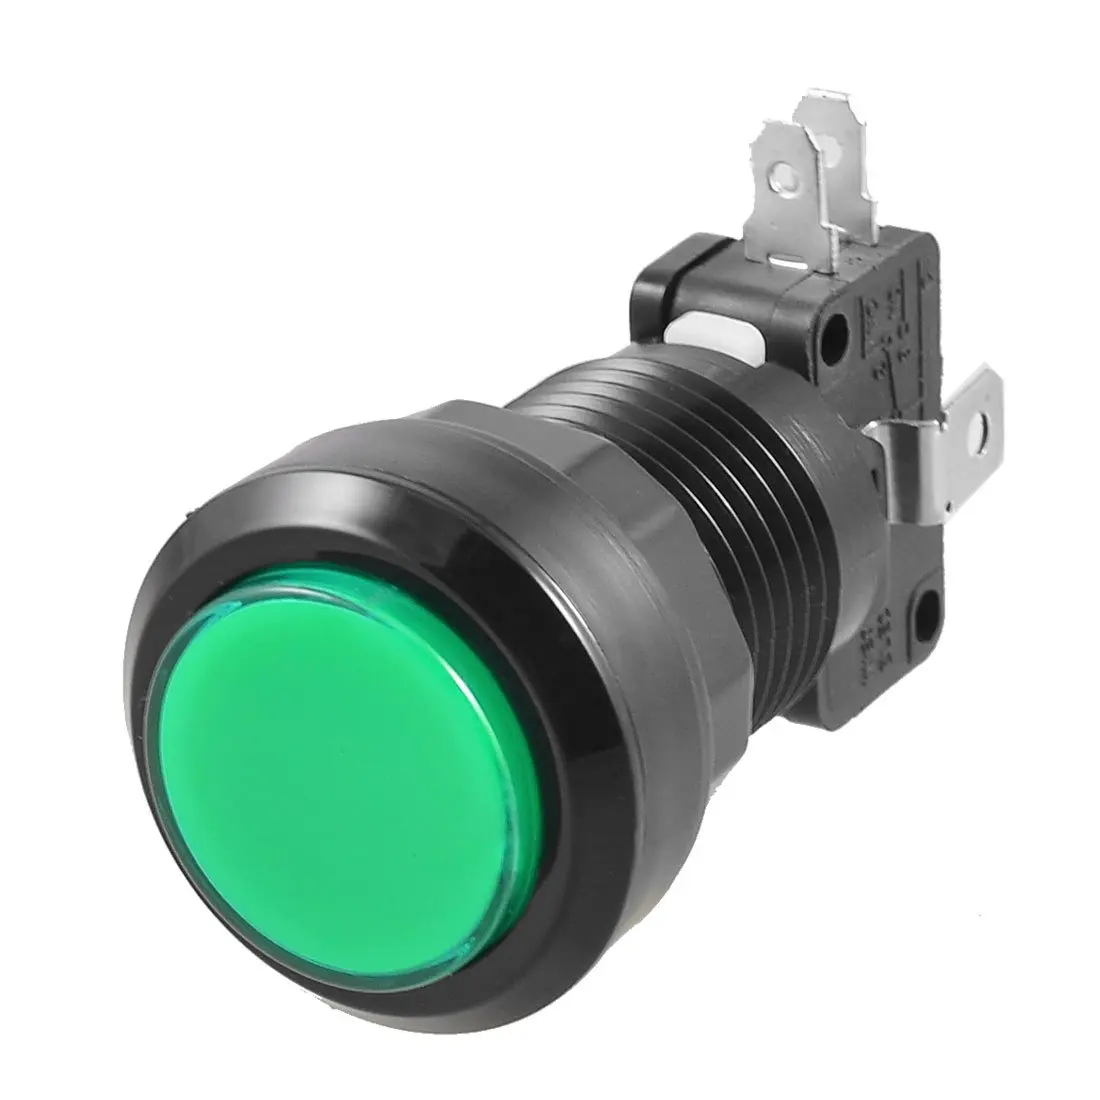 Зеленая LED-лампа 24 мм Диаметр круглая нажимная кнопка w концевой выключатель для аркадная видеоигра